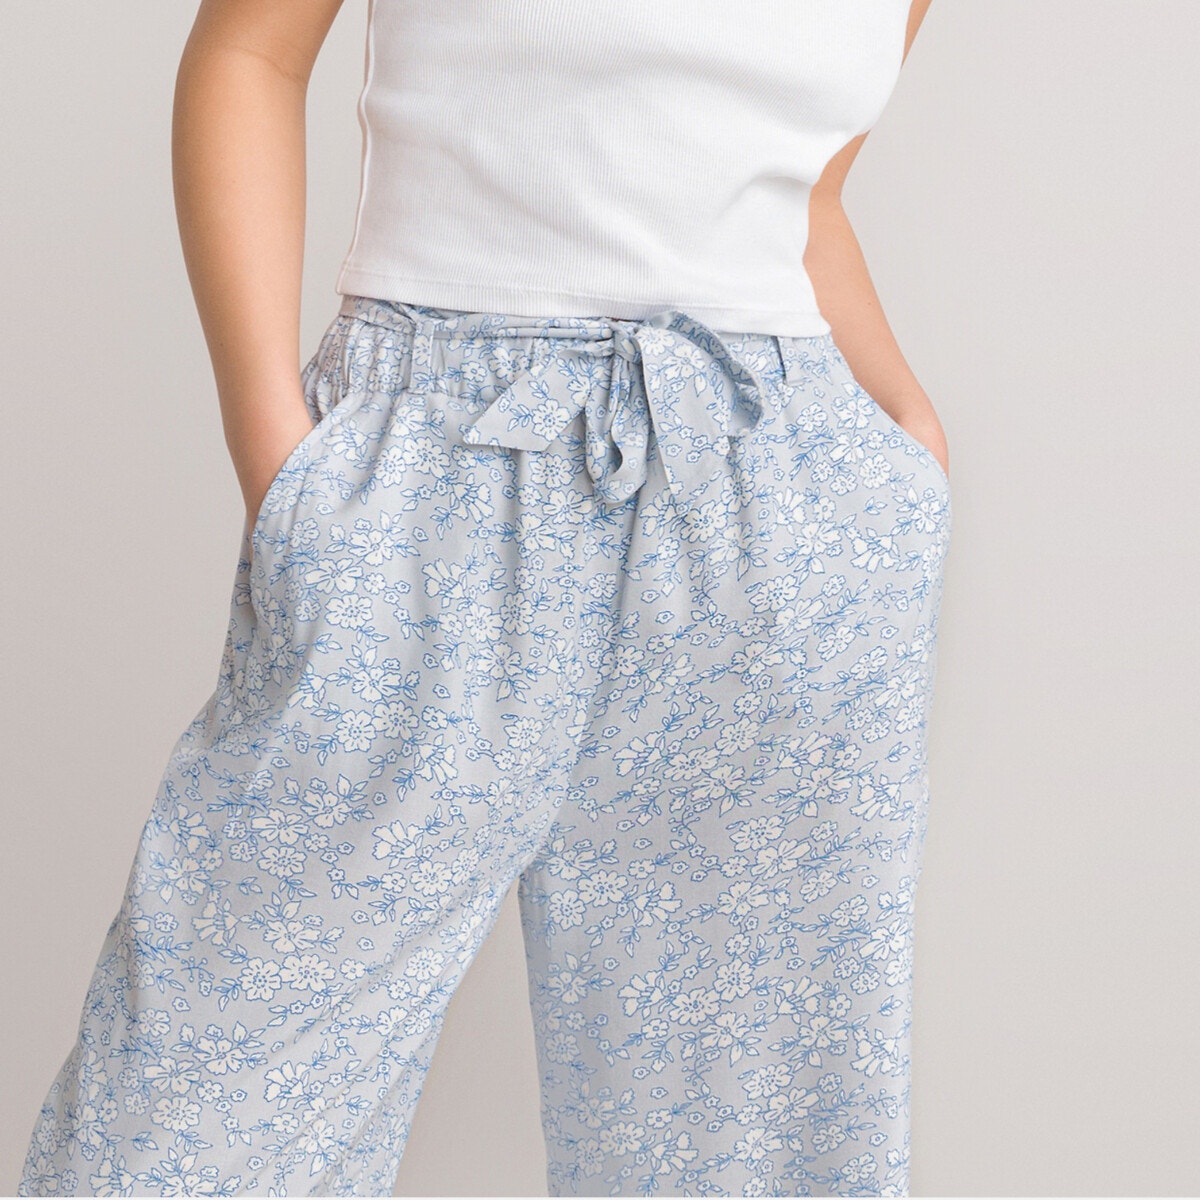 Χυτό φαρδύ παντελόνι με φλοράλ print, 10-18 ετών